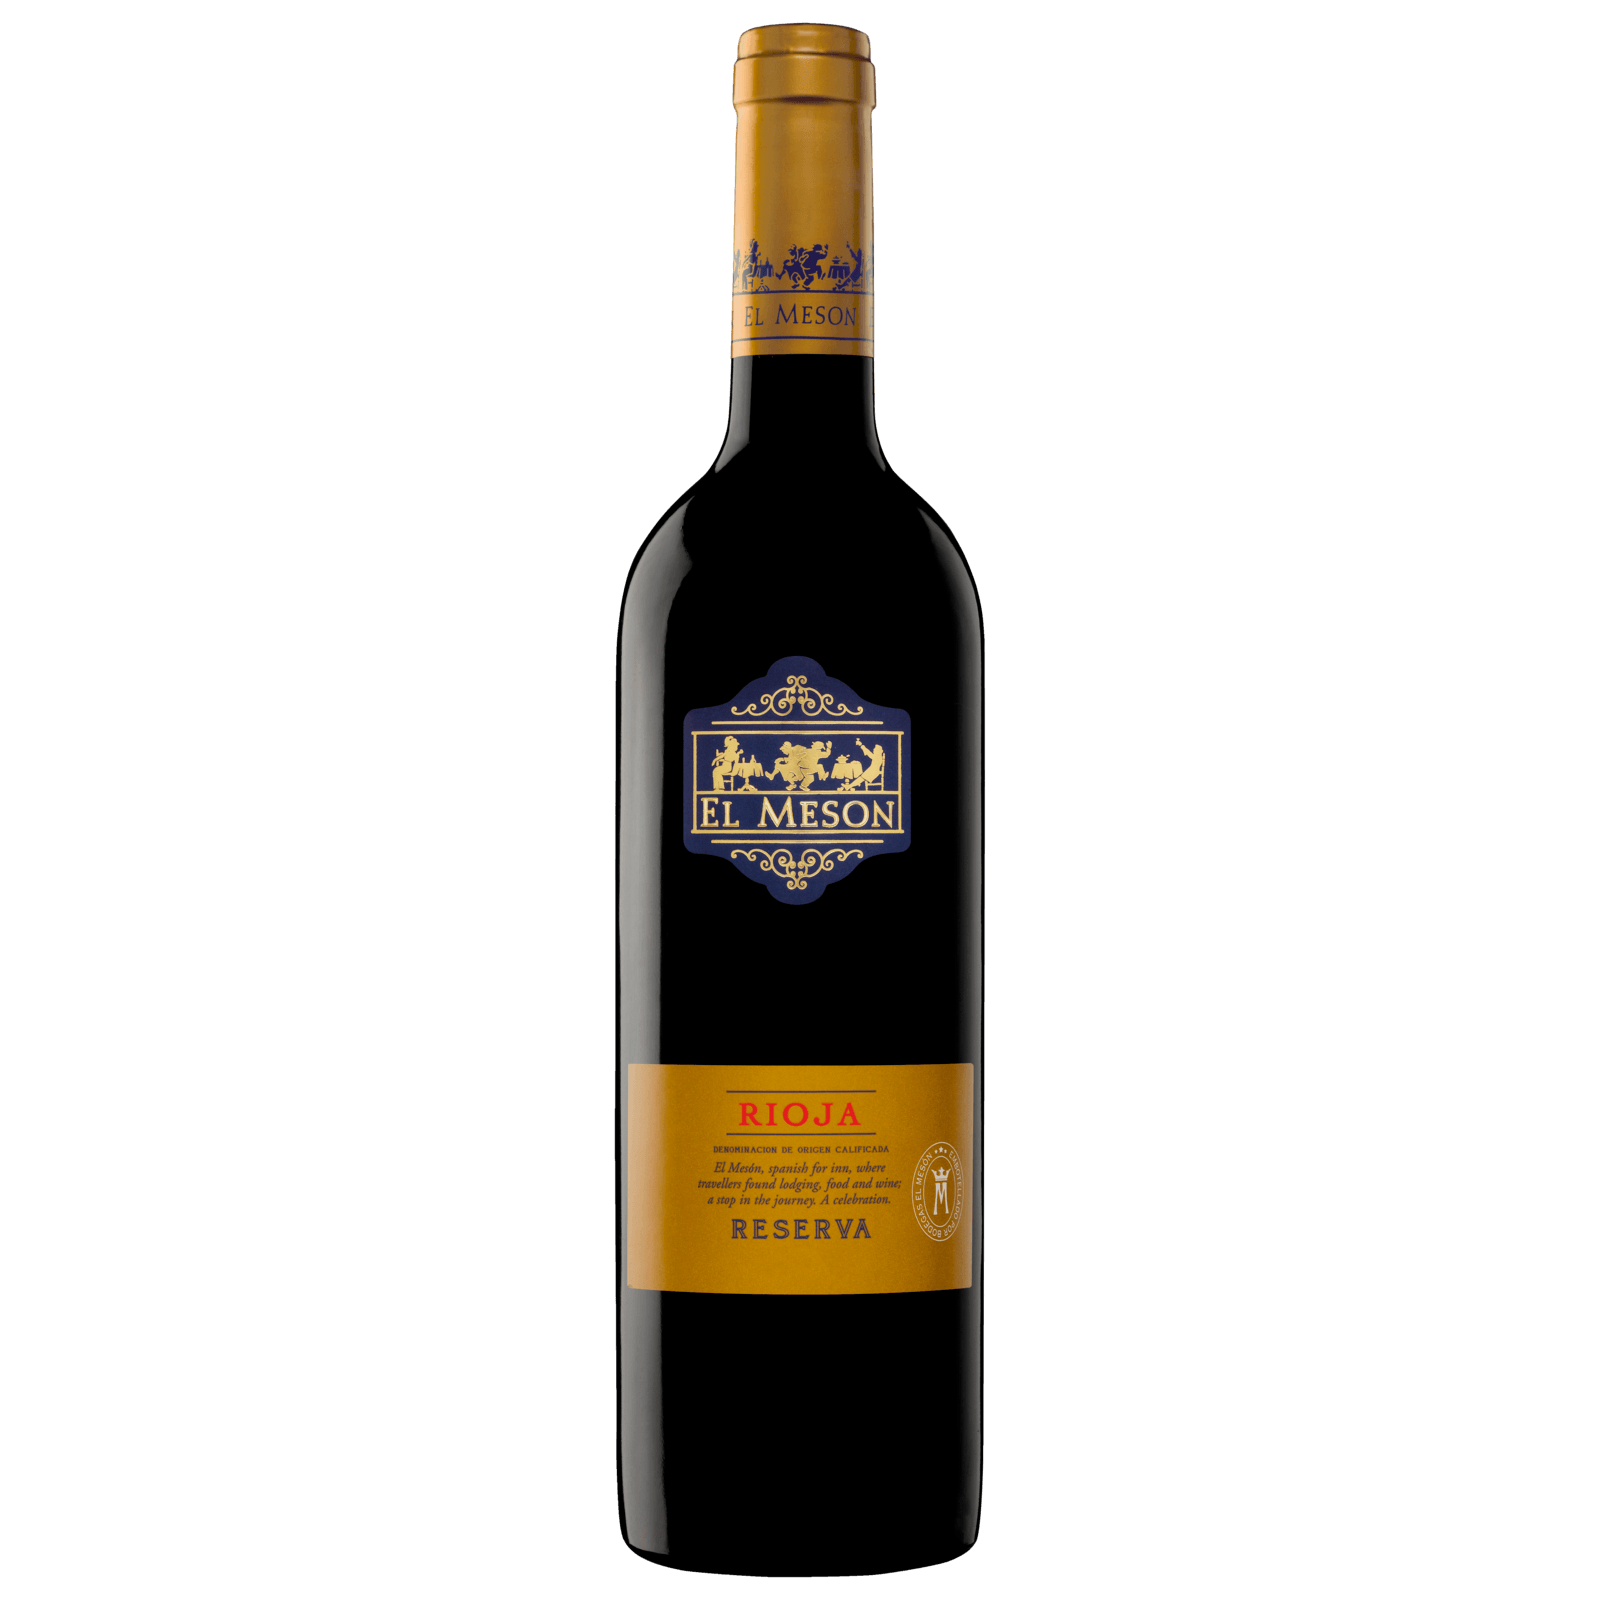 Cepa Lebrel Rioja für Reserva Lidl von DOCa Rotwein trocken, 2017 4,99€